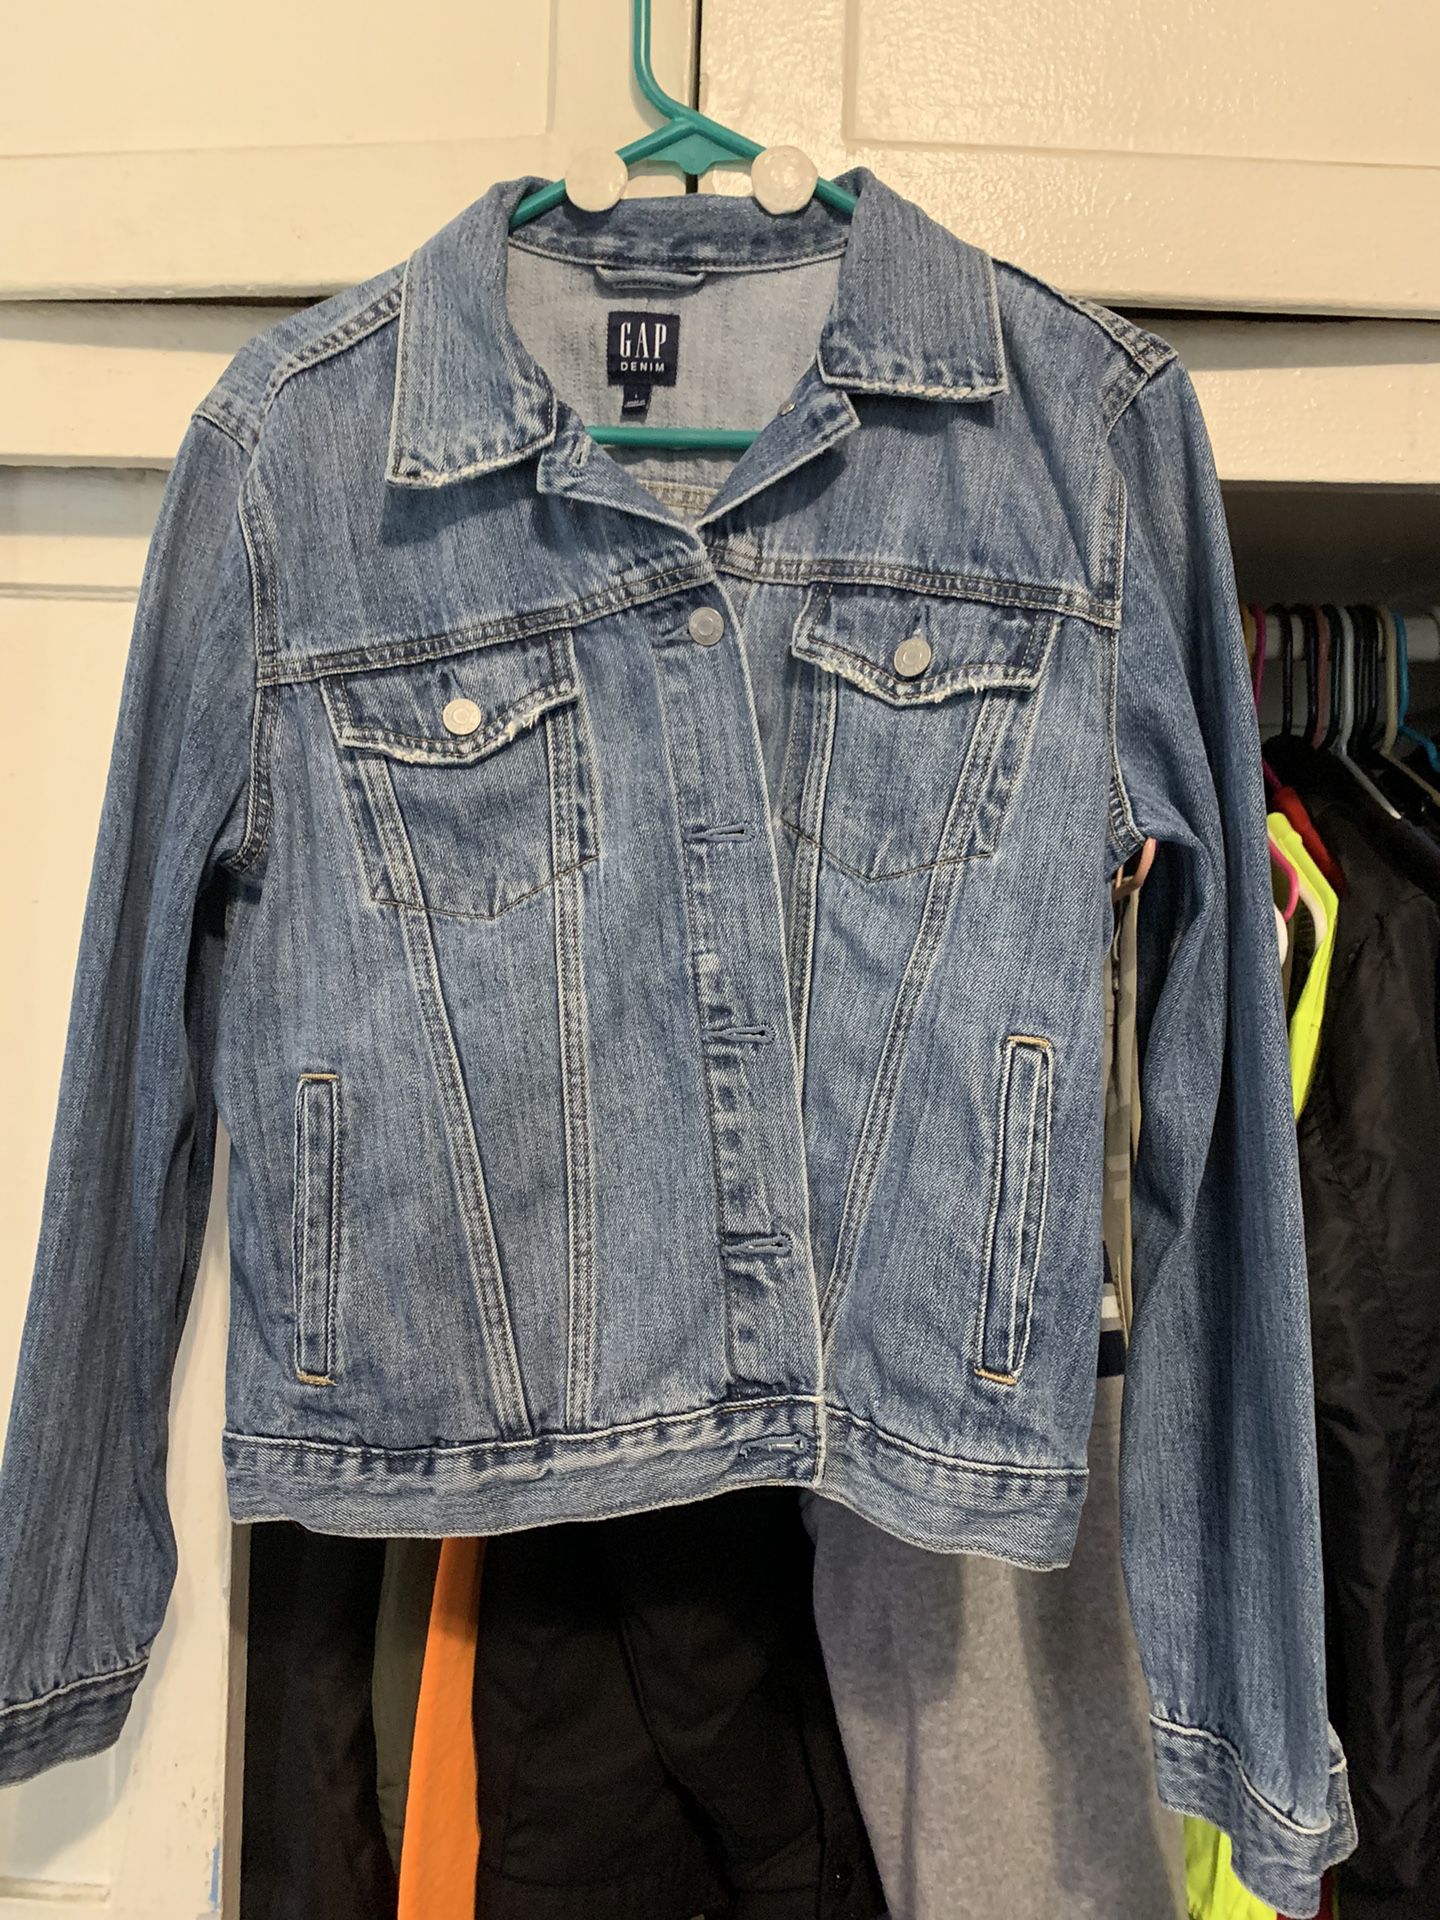 Gap Women’s Denim Jacket